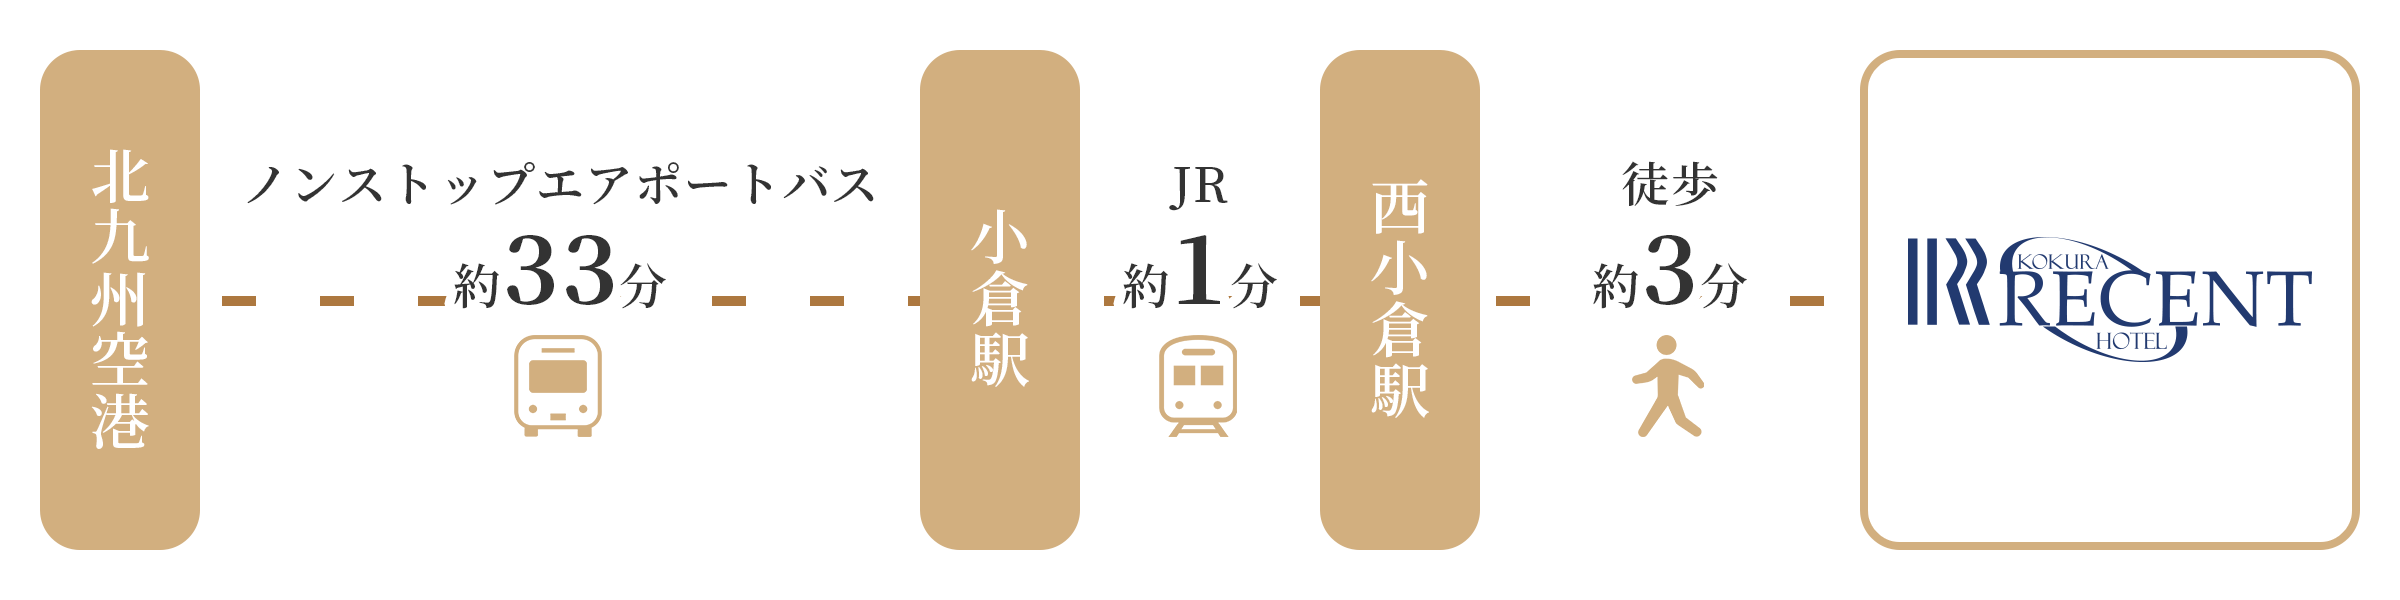 北九州空港よりエアポートバスでJR小倉駅へ。JR小倉駅からJR西小倉駅へ。そこから徒歩3分です。